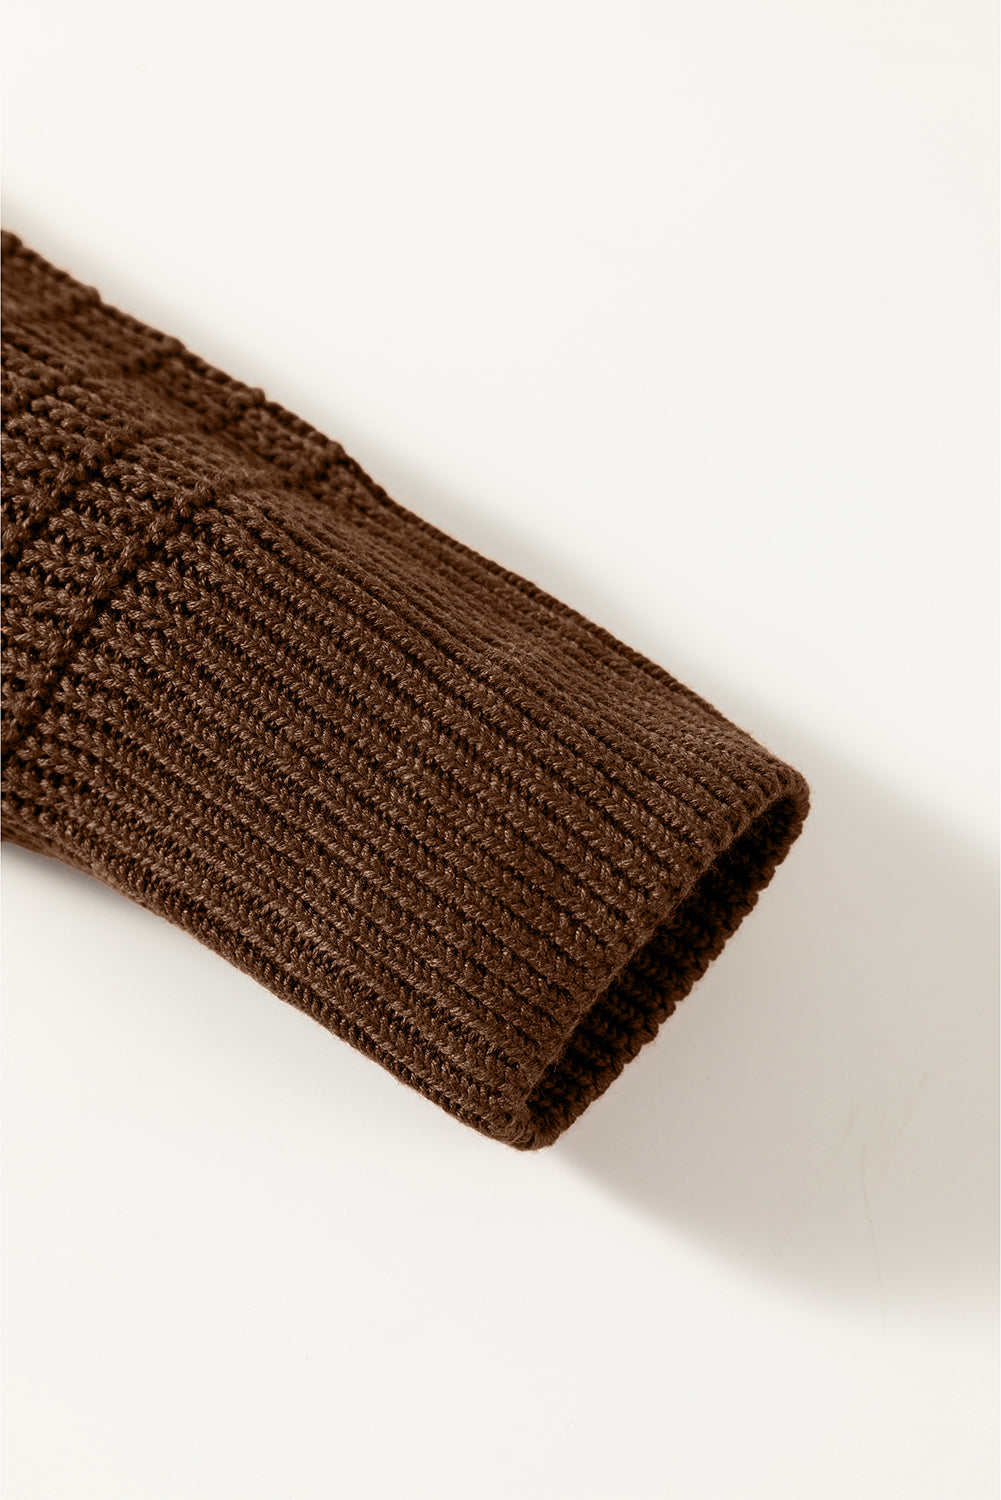 Pleten pulover s kvadratnim izrezom in mešano teksturo